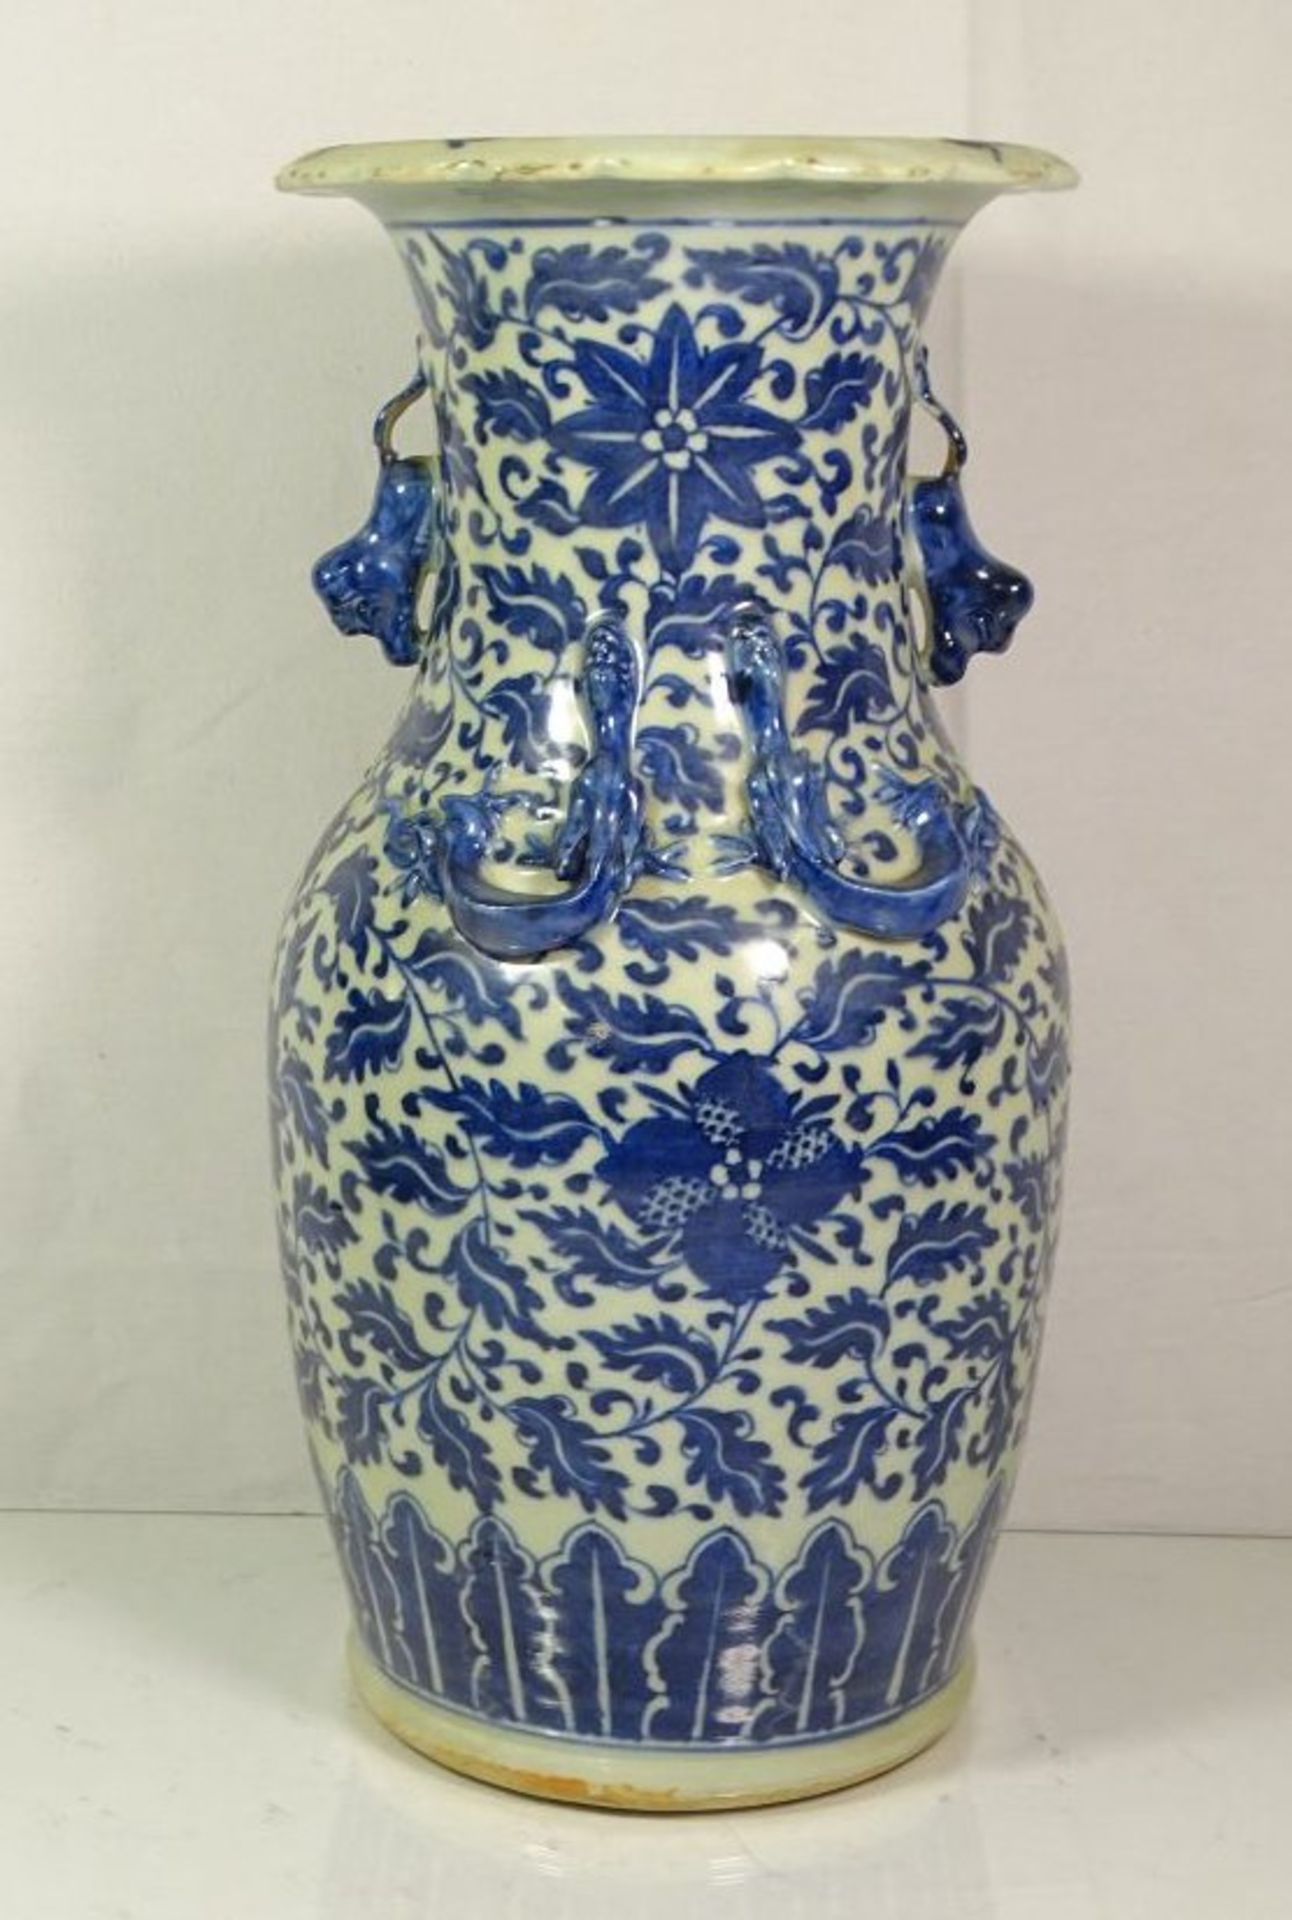 hohe Vase, wohl China, Löwen als Handhaben, sowie plast. Echsen, blaues Dekor, 1x Echse bestossen